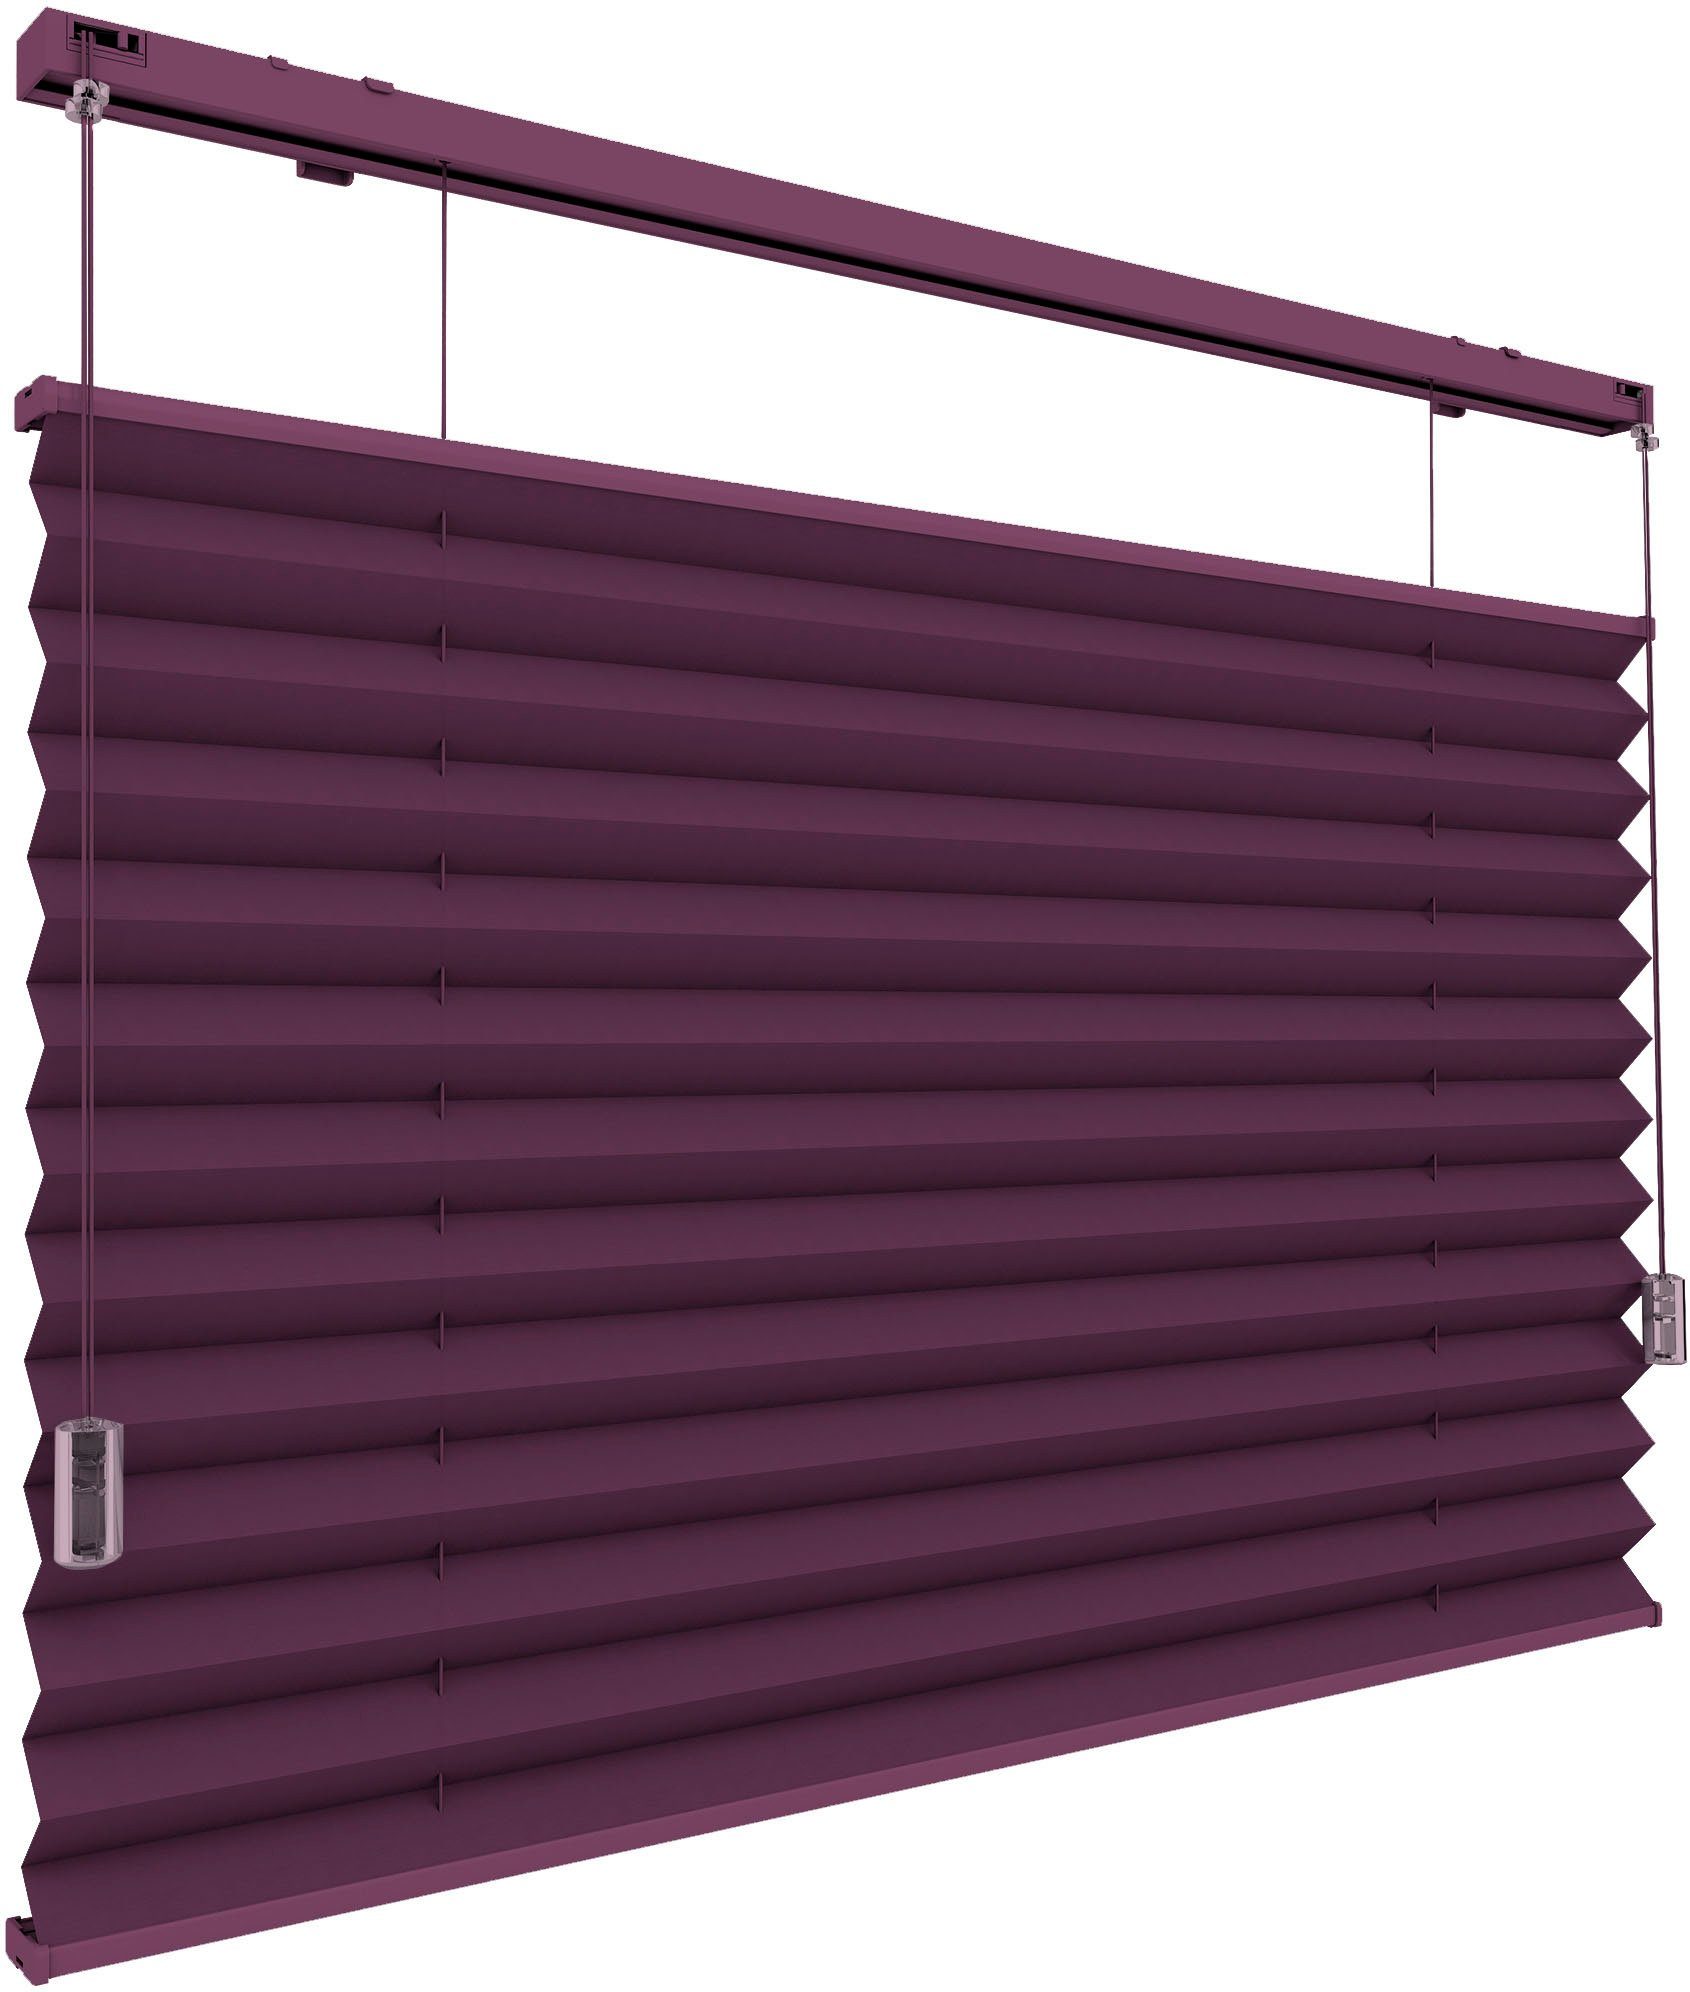 Plissee Plissee, GARESA, Lichtschutz, freihängend, am Fenster perfekt steuern, verschraubt, dichter violett Lichteinfall Stoff